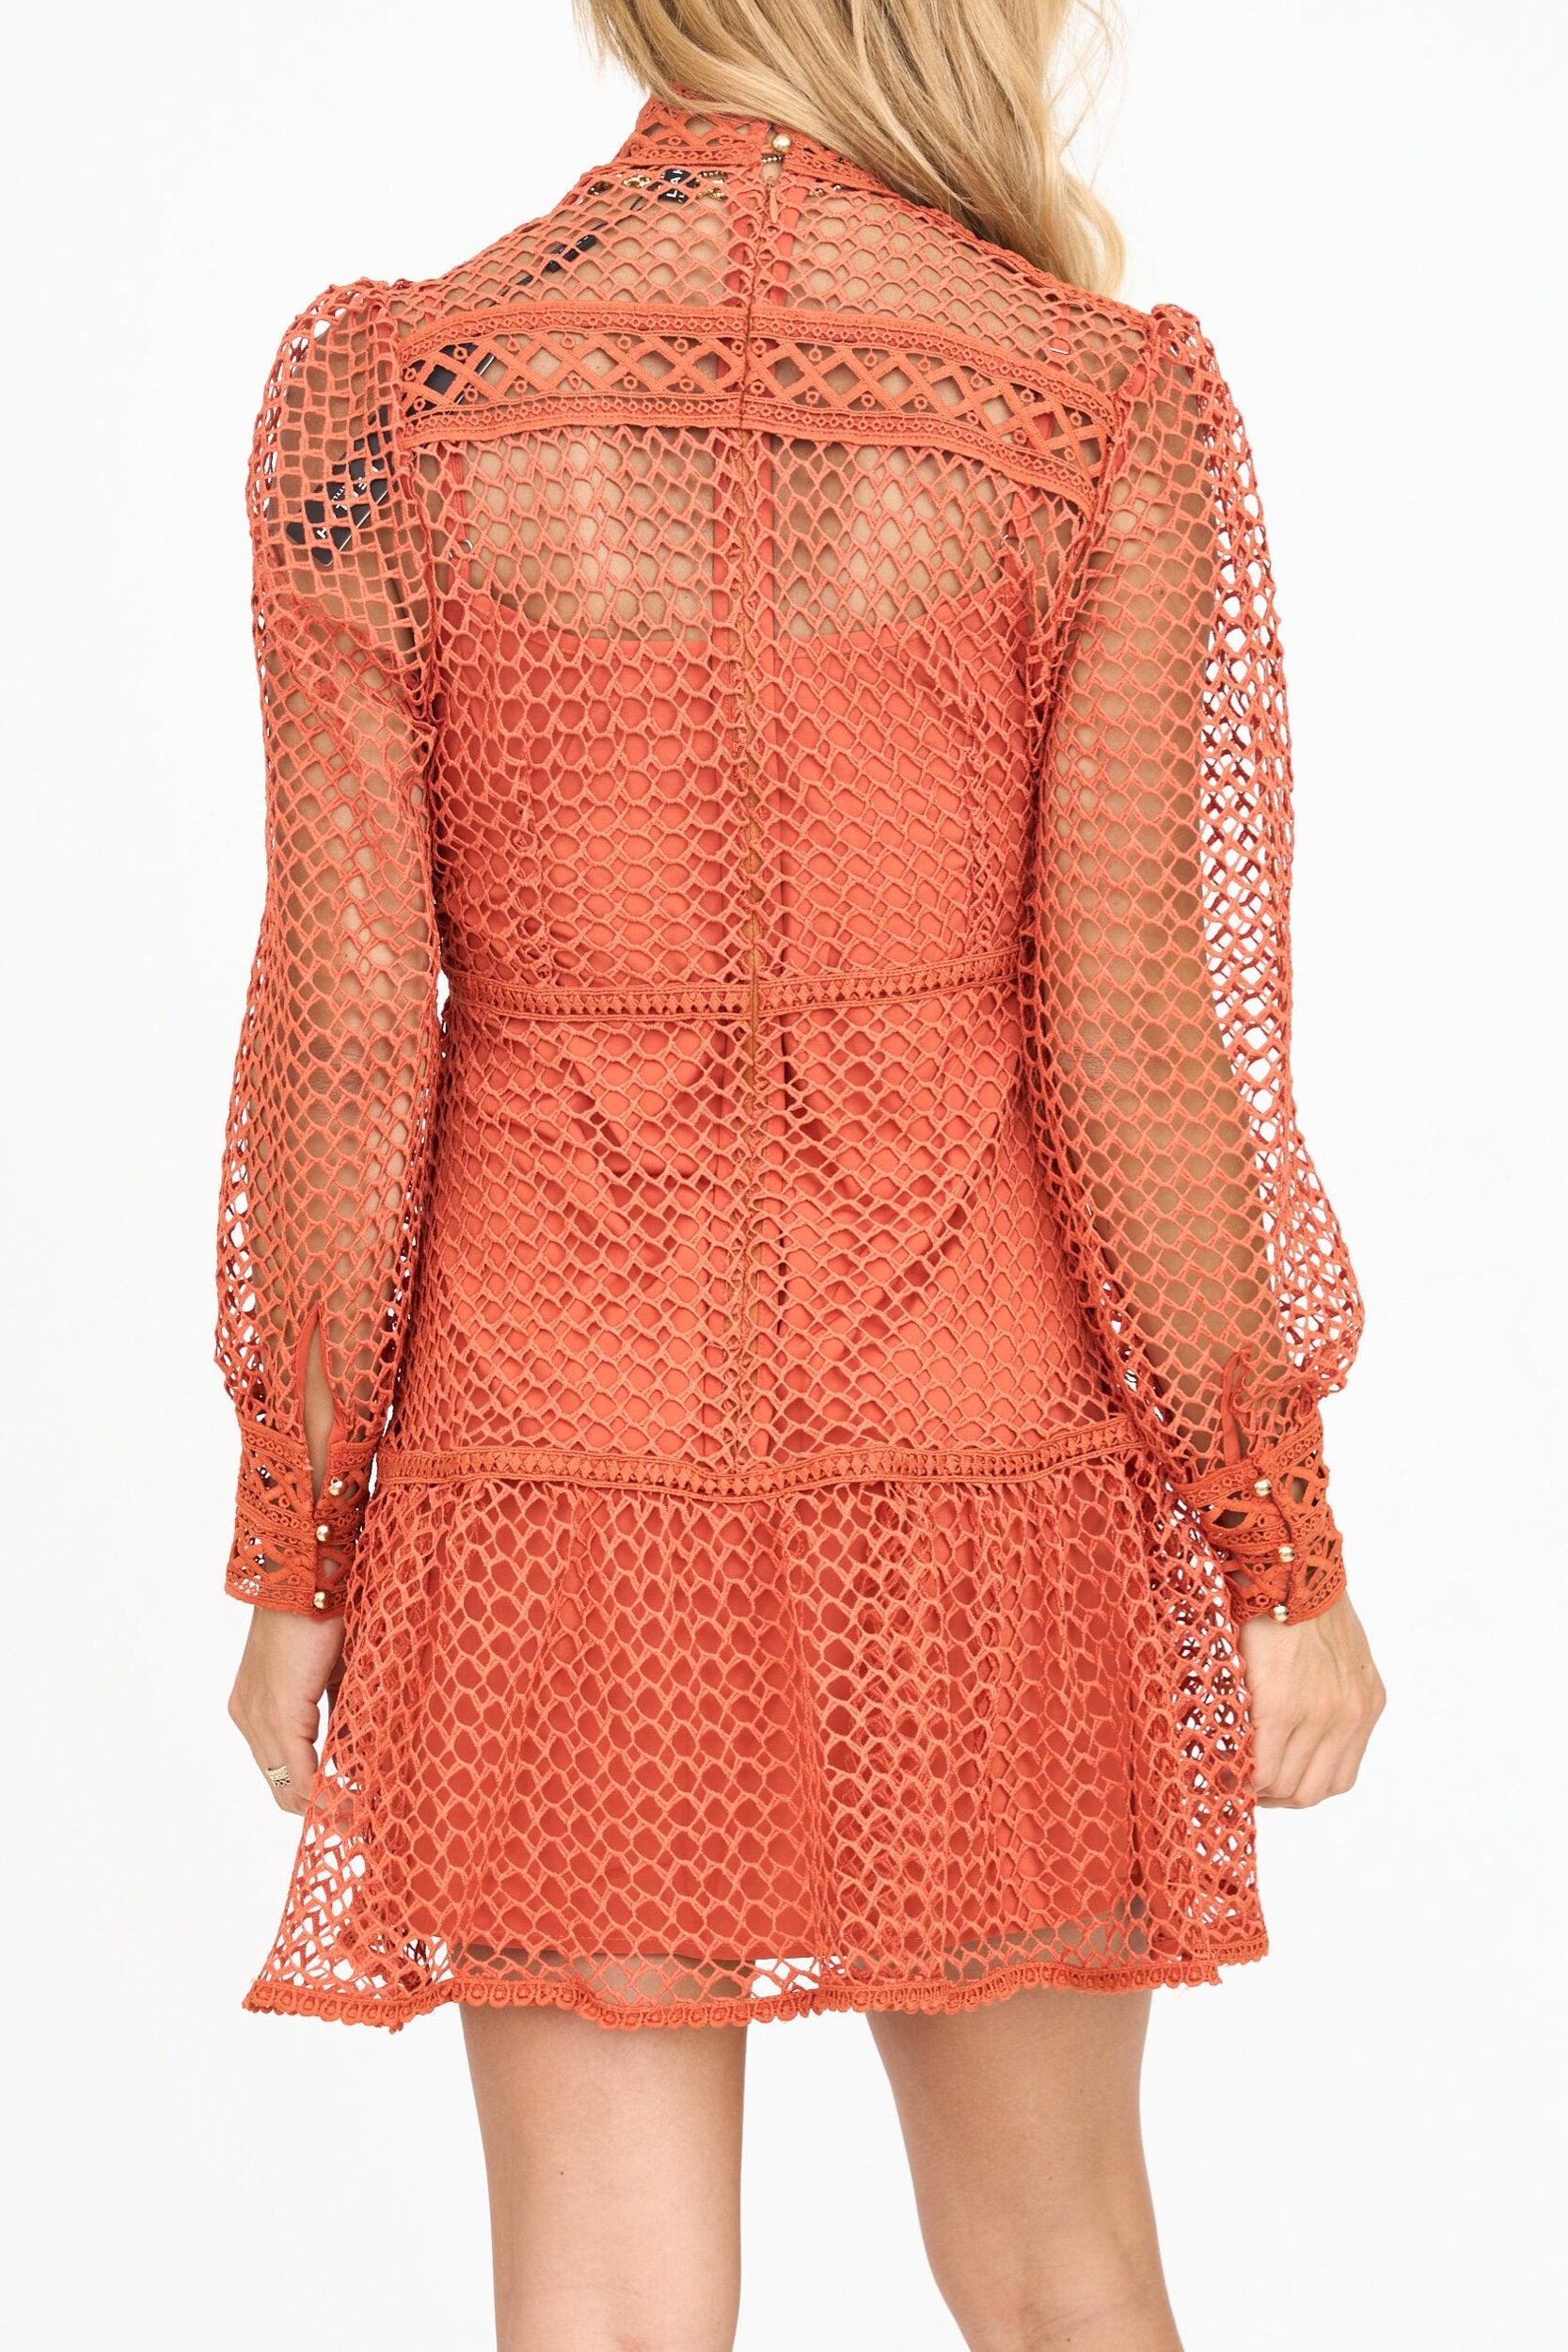 Fishnet Lace Mini Dress